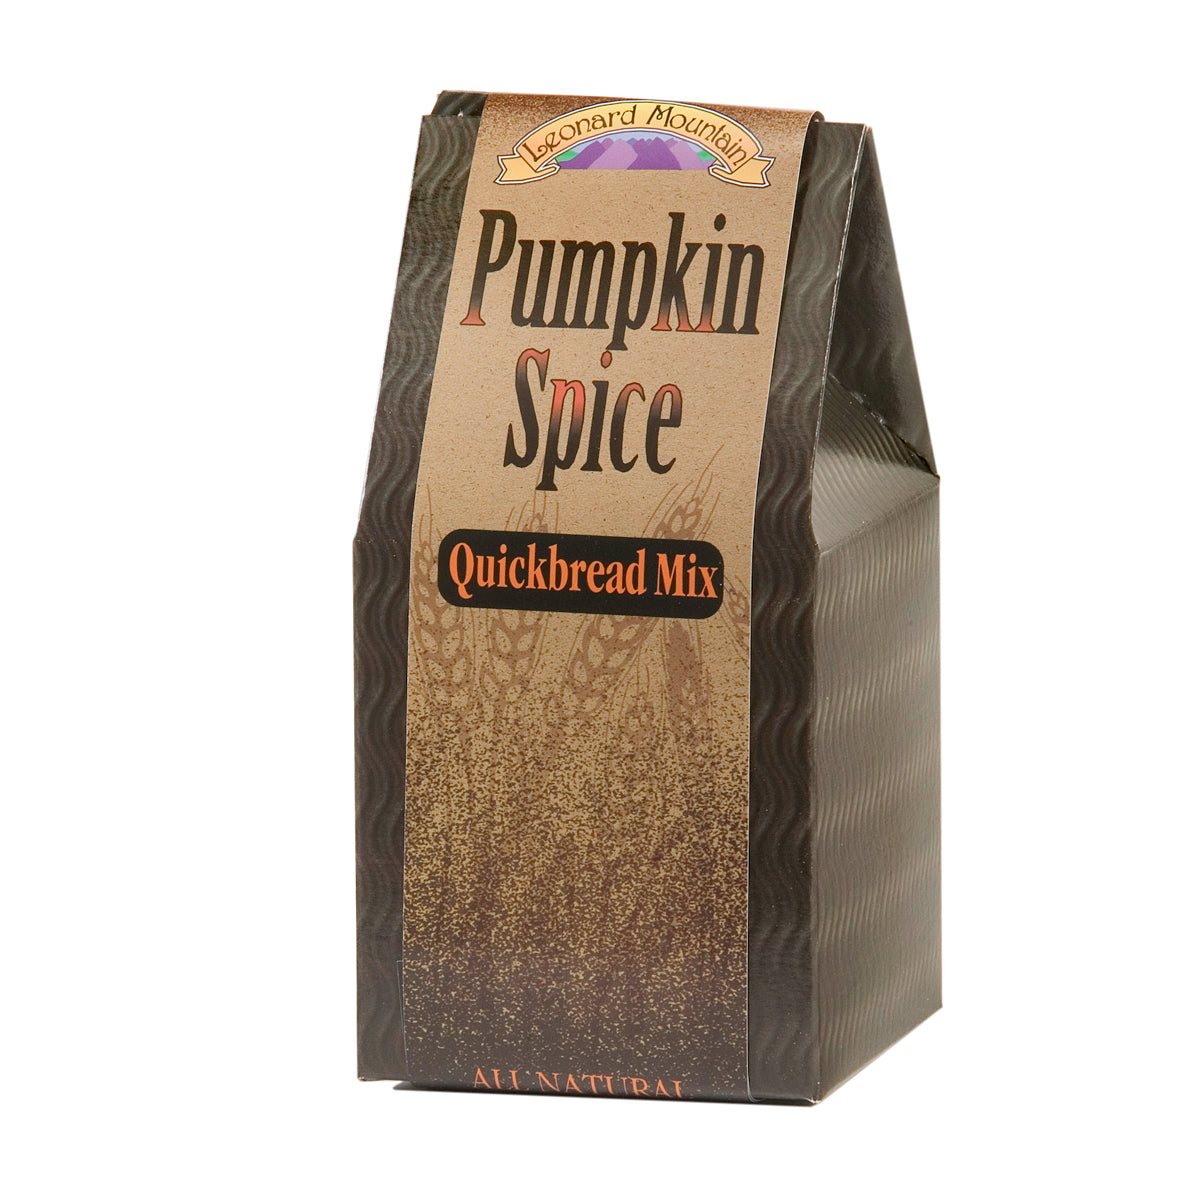 Pumpkin Spice Quick Bread Mix